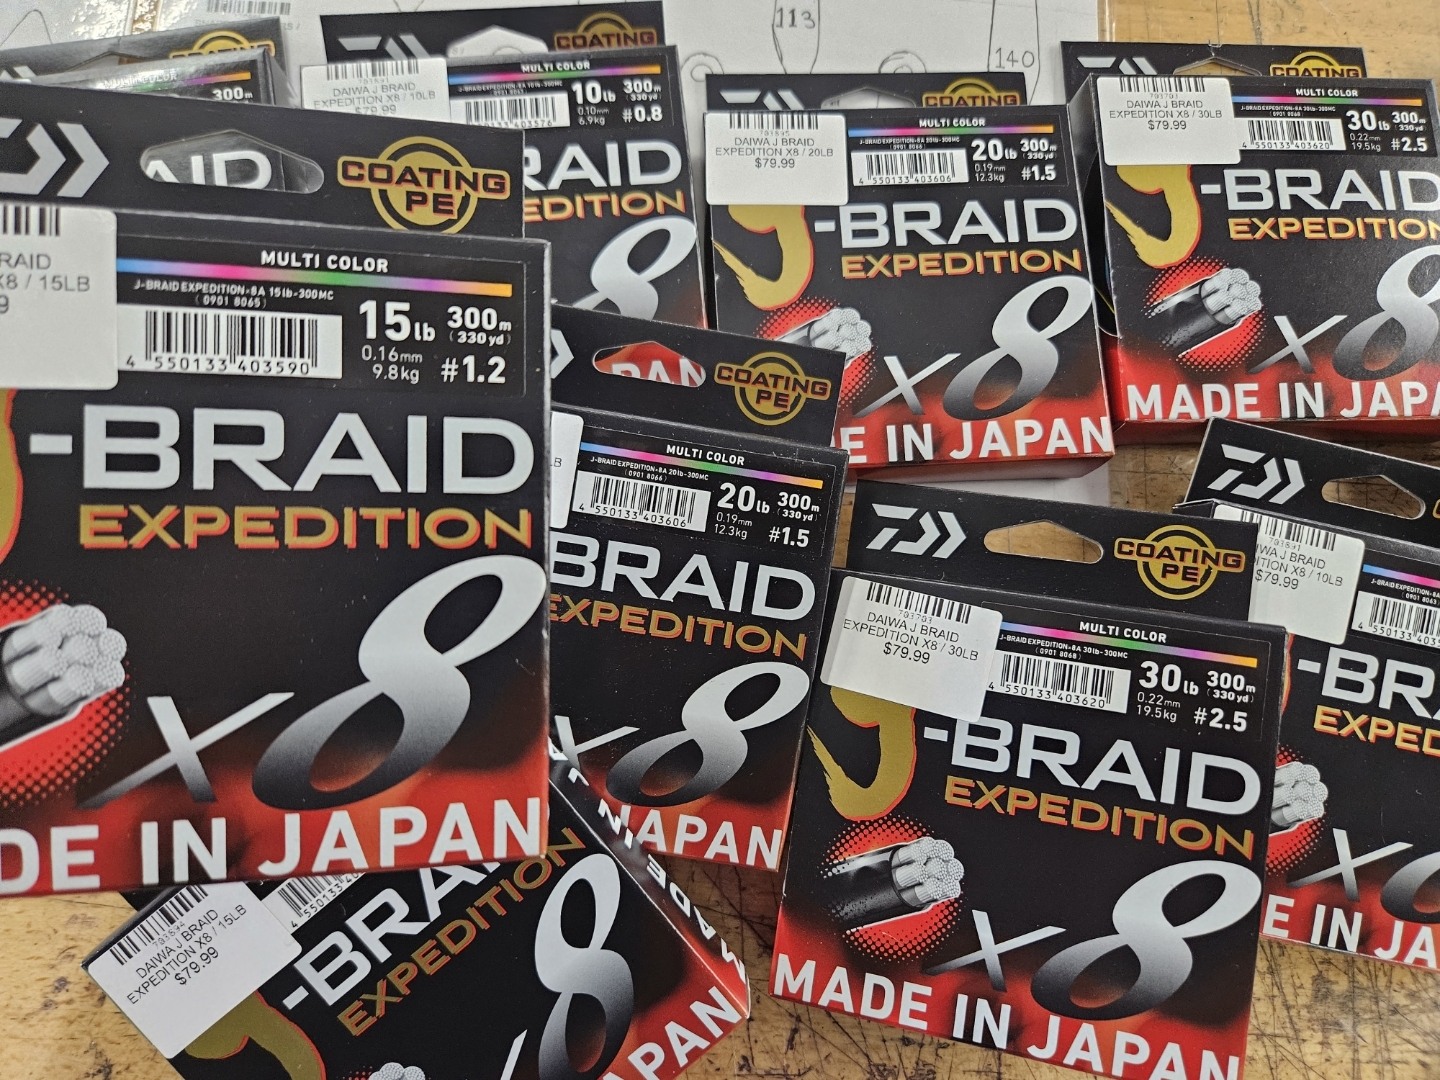 Daiwa J-Braid Grand Braid Line 150yds 8lb